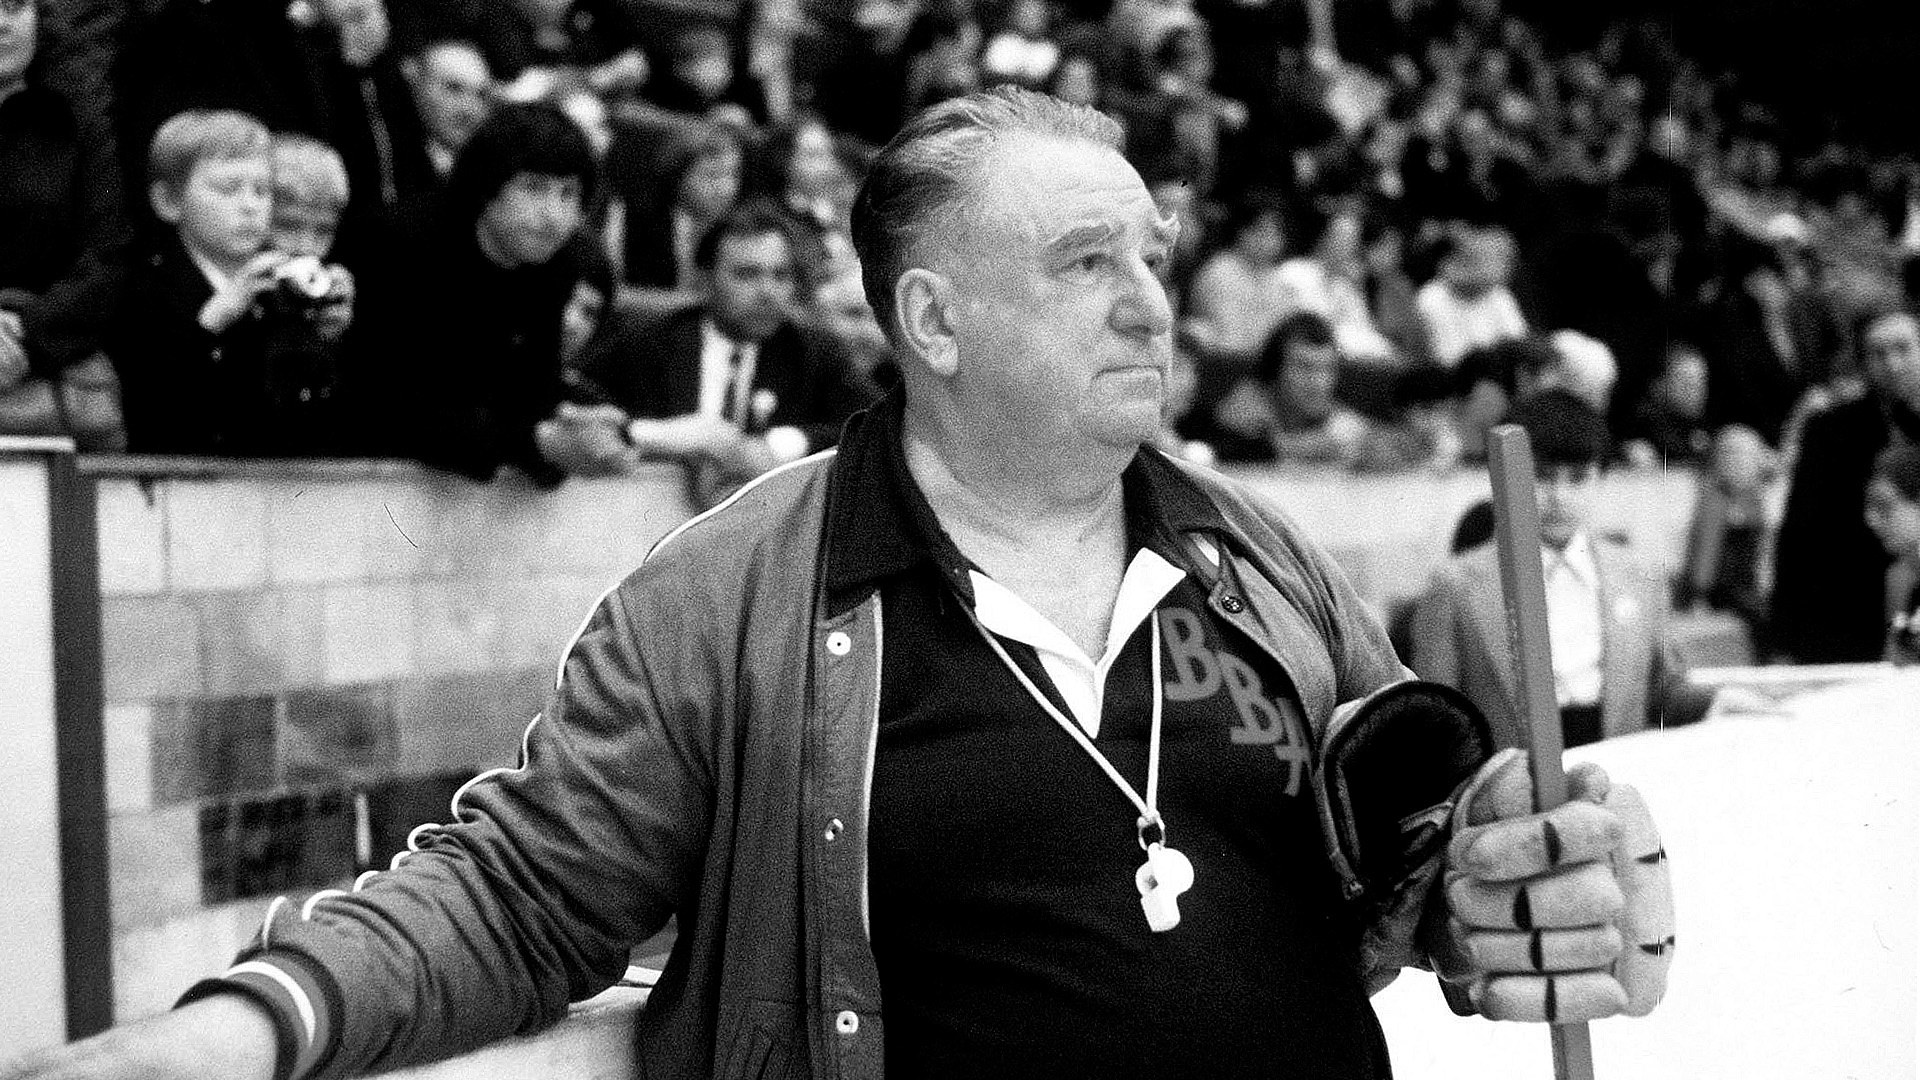 С 1963 по 1971 год сборная СССР по хоккею под руководством Анатолия Тарасова становилась чемпионом во всех международных турнирах. Он введен в Зал хоккейной славы в Торонто и в Зал хоккейной славы Международной федерации хоккея